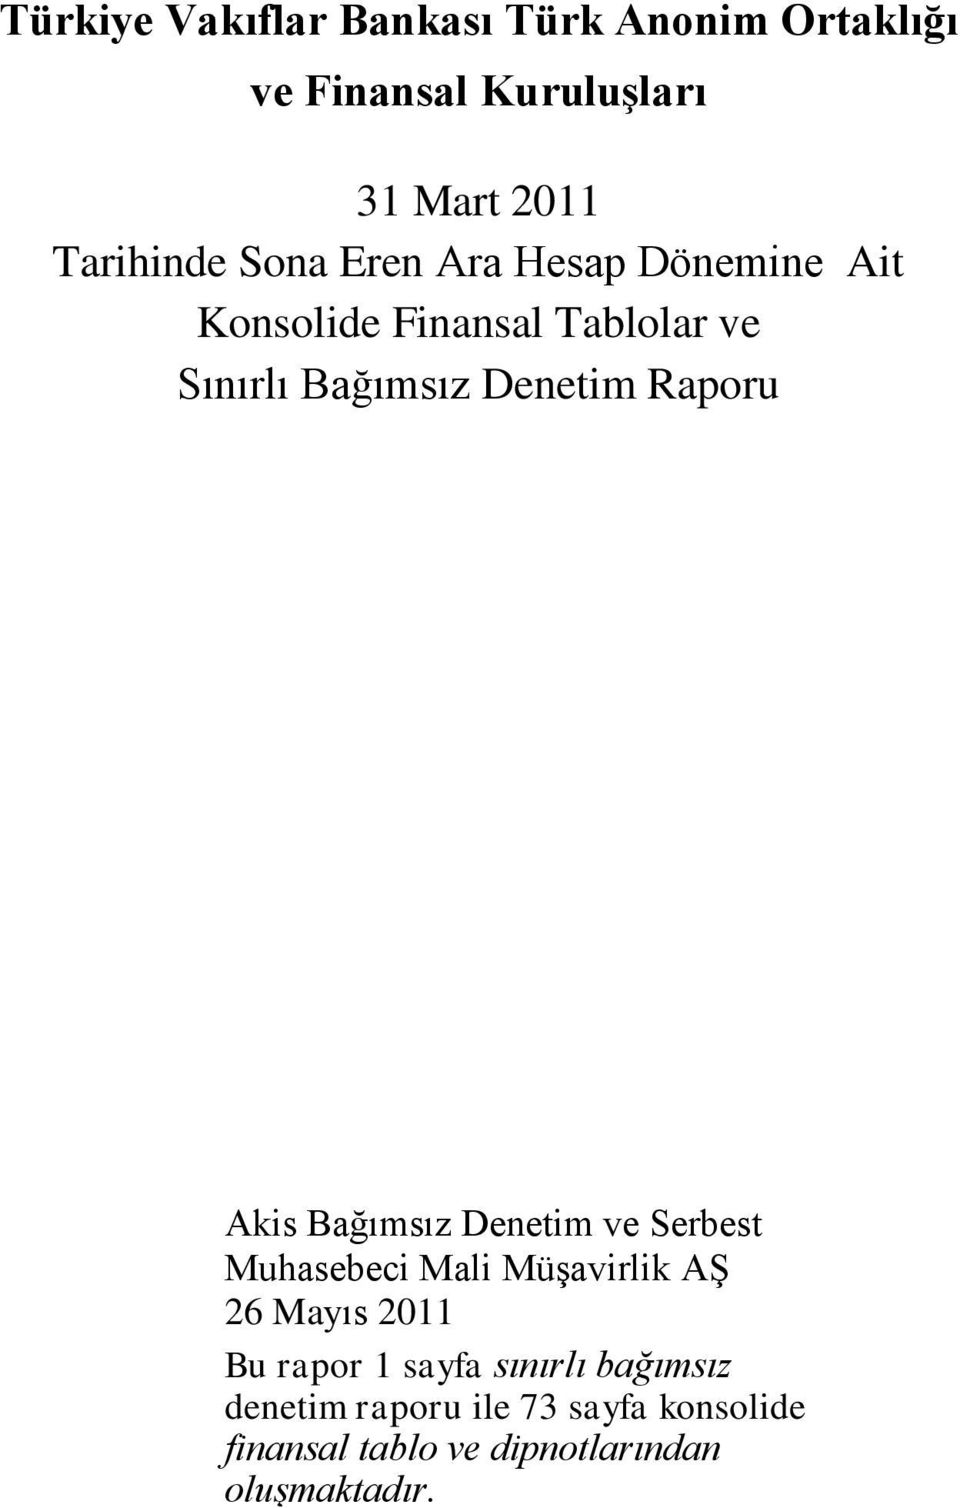 Akis Bağımsız Denetim ve Serbest Muhasebeci Mali Müşavirlik AŞ 26 Mayıs 2011 Bu rapor 1 sayfa